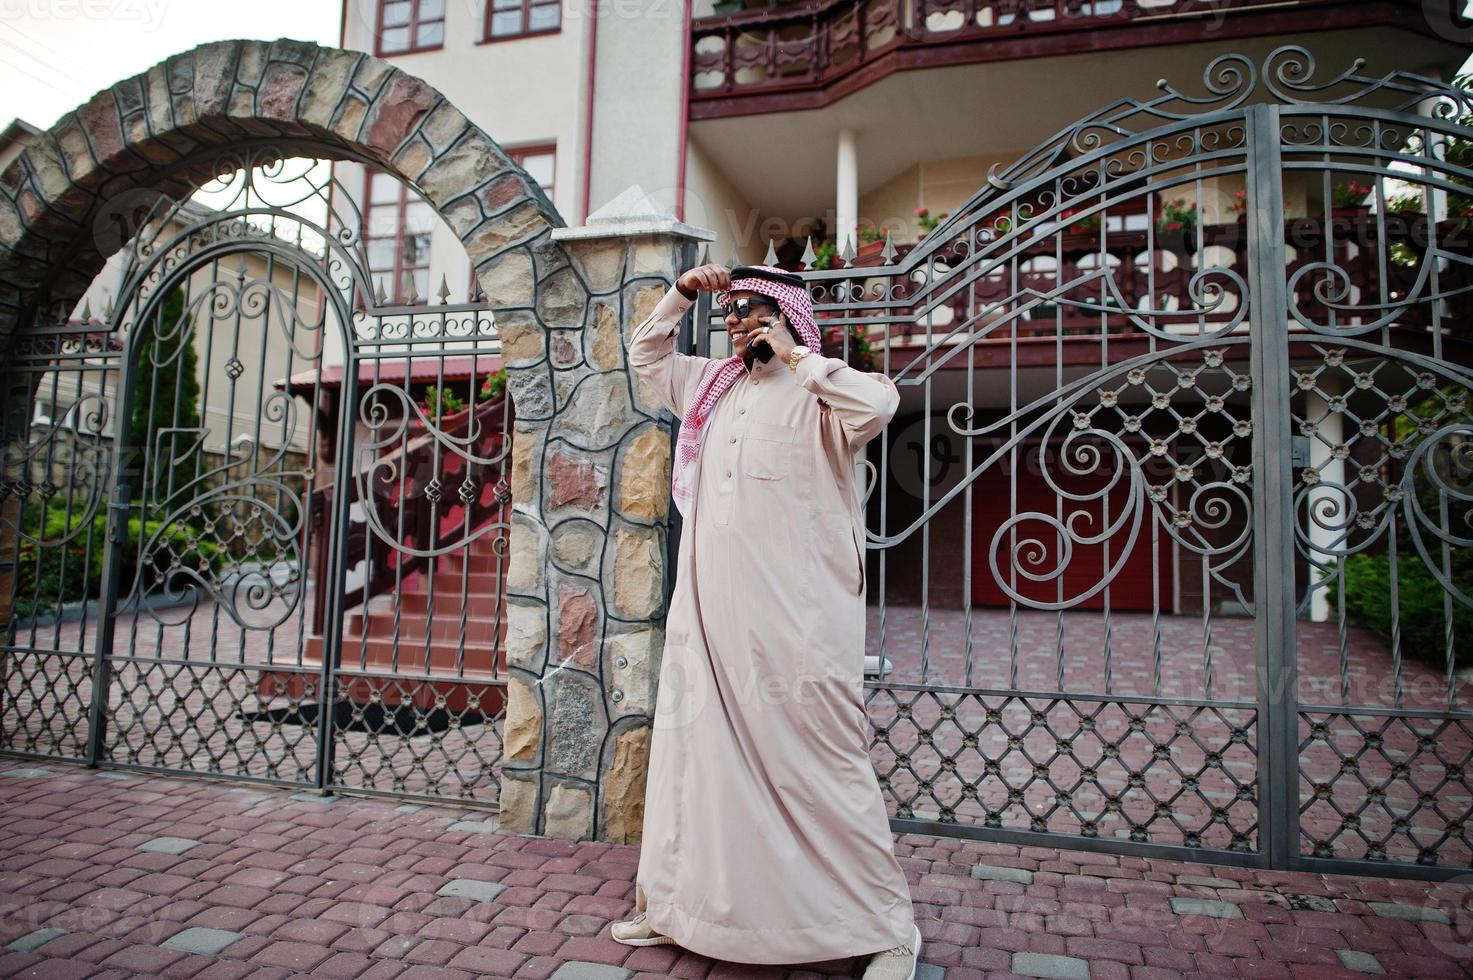 rik mellanöstern arab affärsman med solglasögon poserade på gatan mot herrgård, talar i mobiltelefon. foto